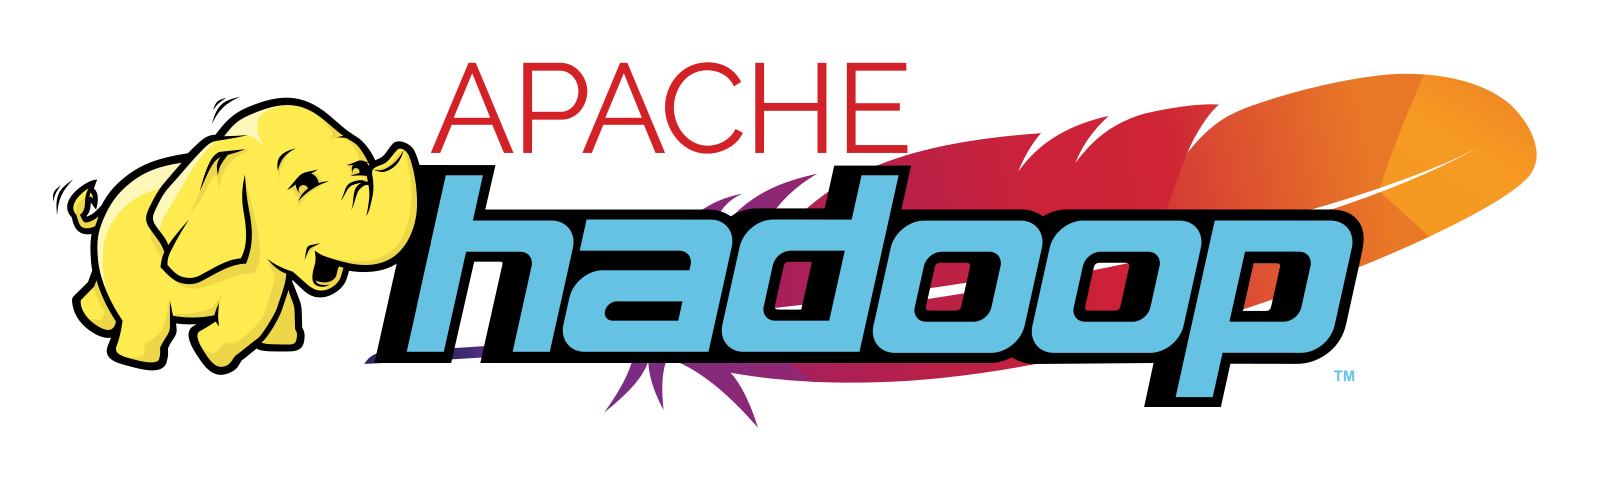 Tensorcrunch und Apache Hadoop